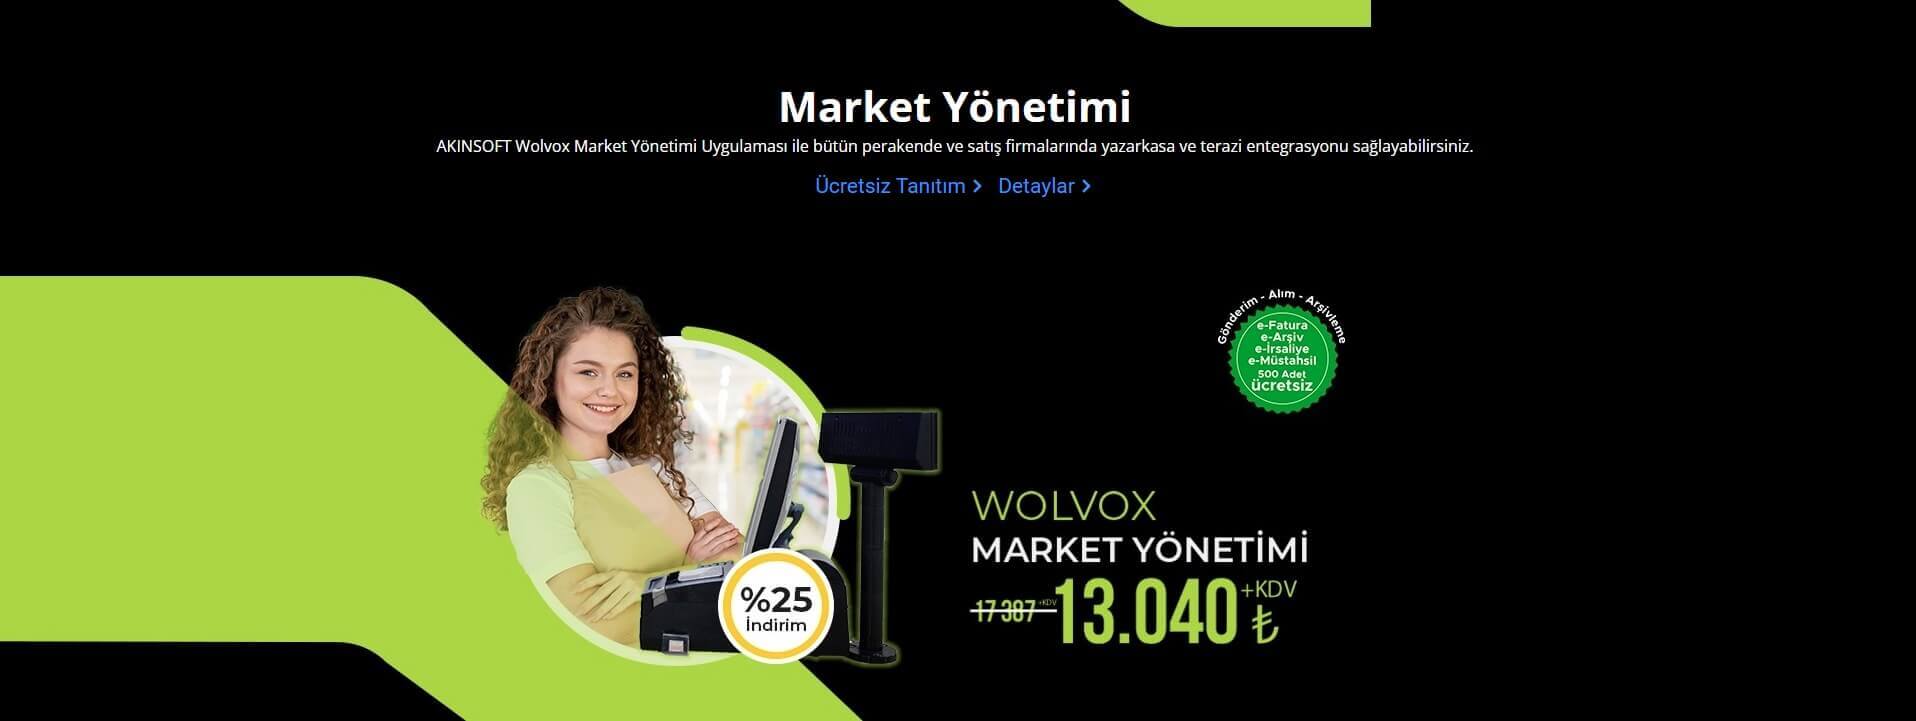 akınsoft wolvox market yönetimi